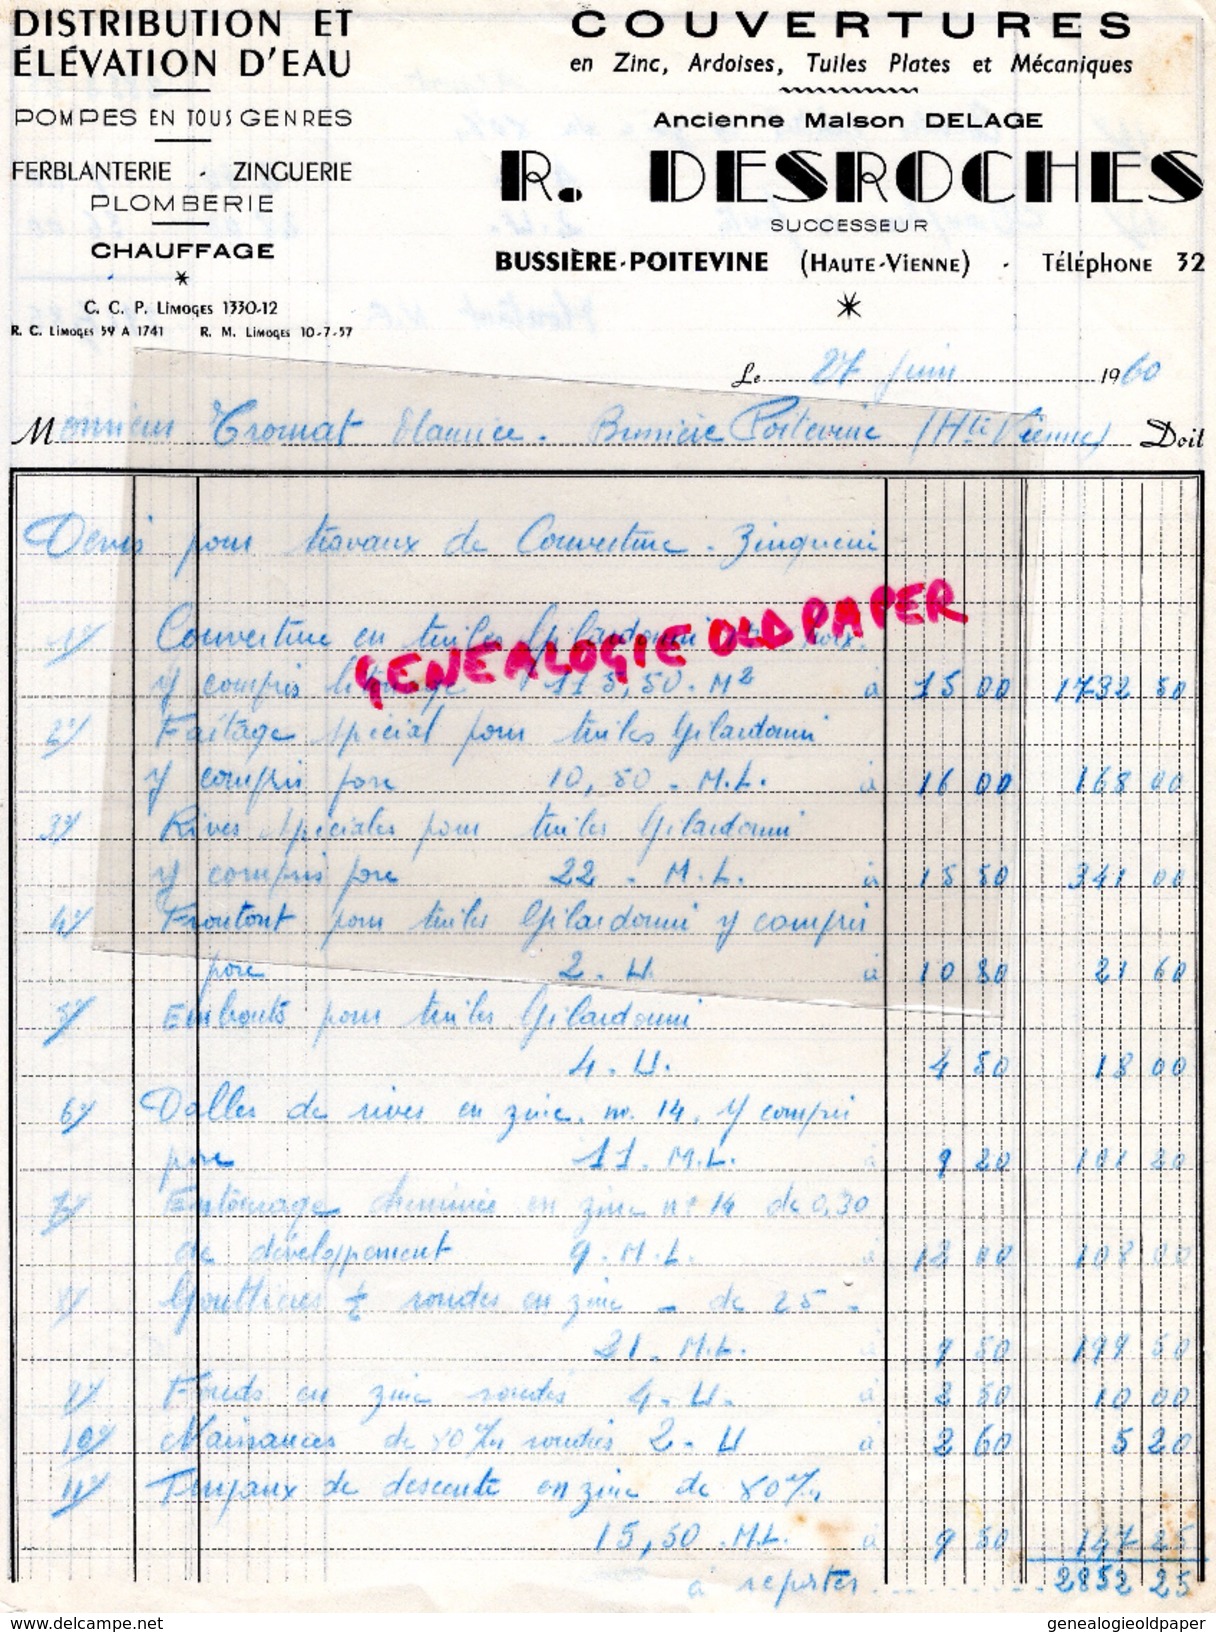 87 - BUSSIERE POITEVINE- FACTURE R. DESROCHES - DELAGE- COUVERTURE ZINC ARDOISES- PLOMBERIE CHAUFFAGE- 1960 - Petits Métiers